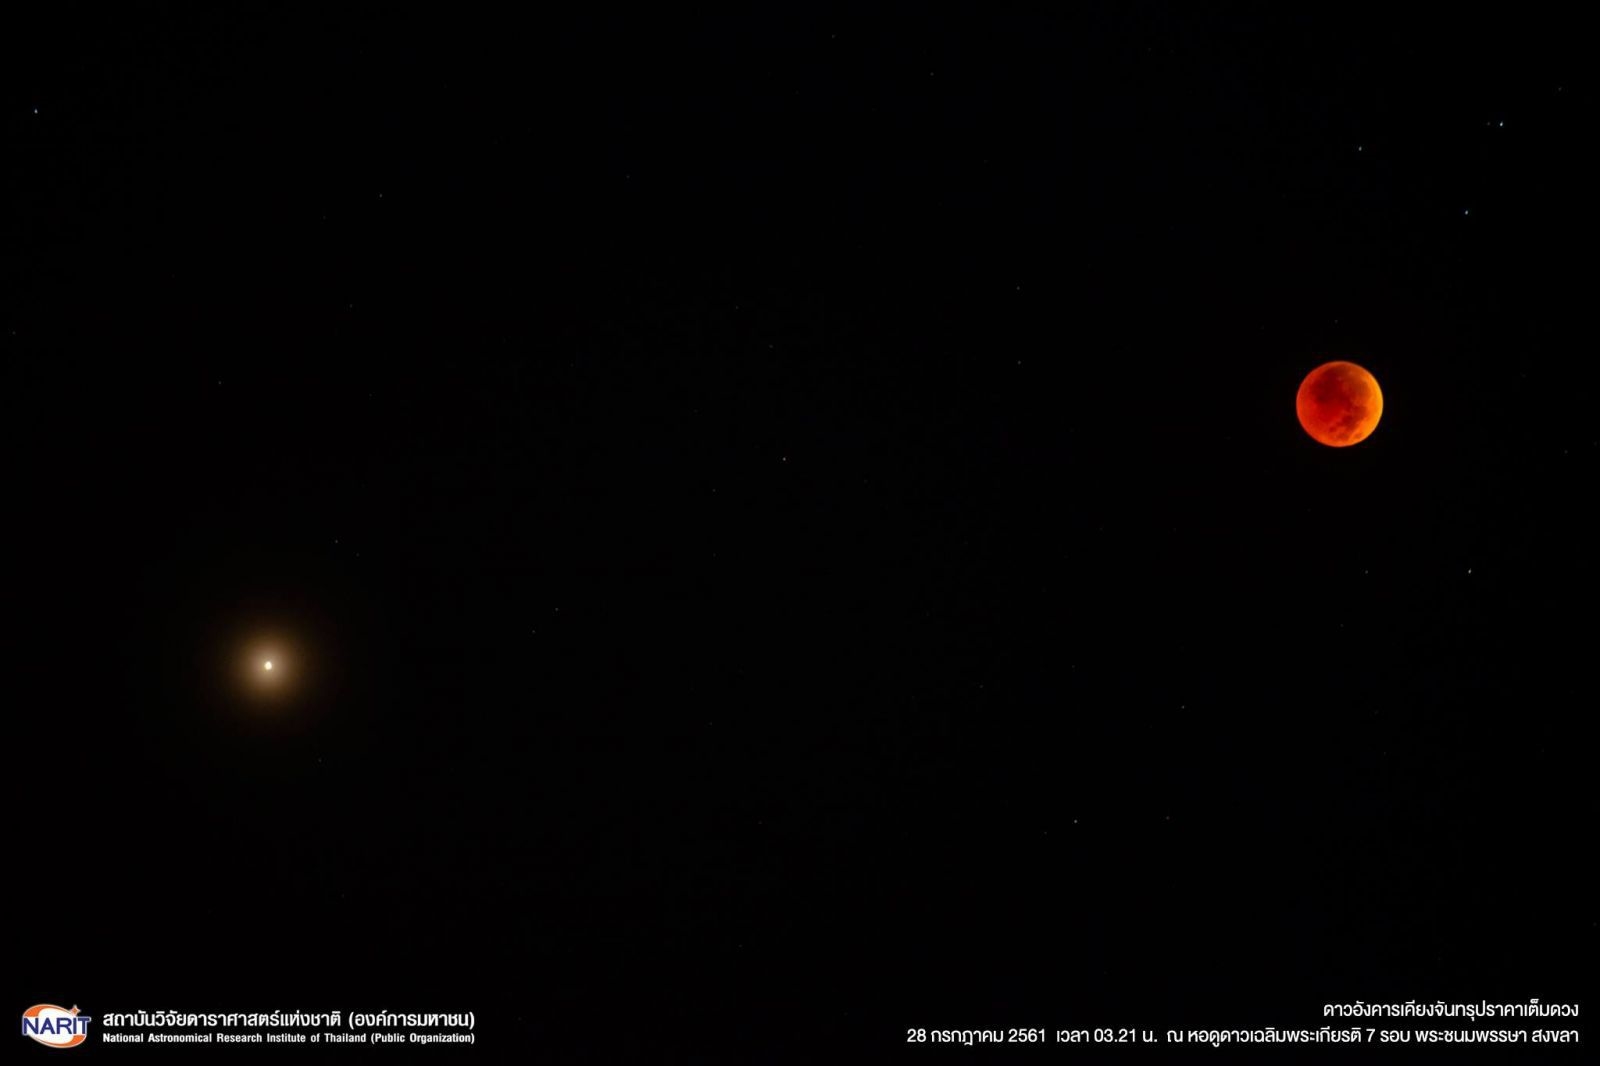 ดวงจันทร์สีแดงอิฐ เคียงอังคารสีเลือด